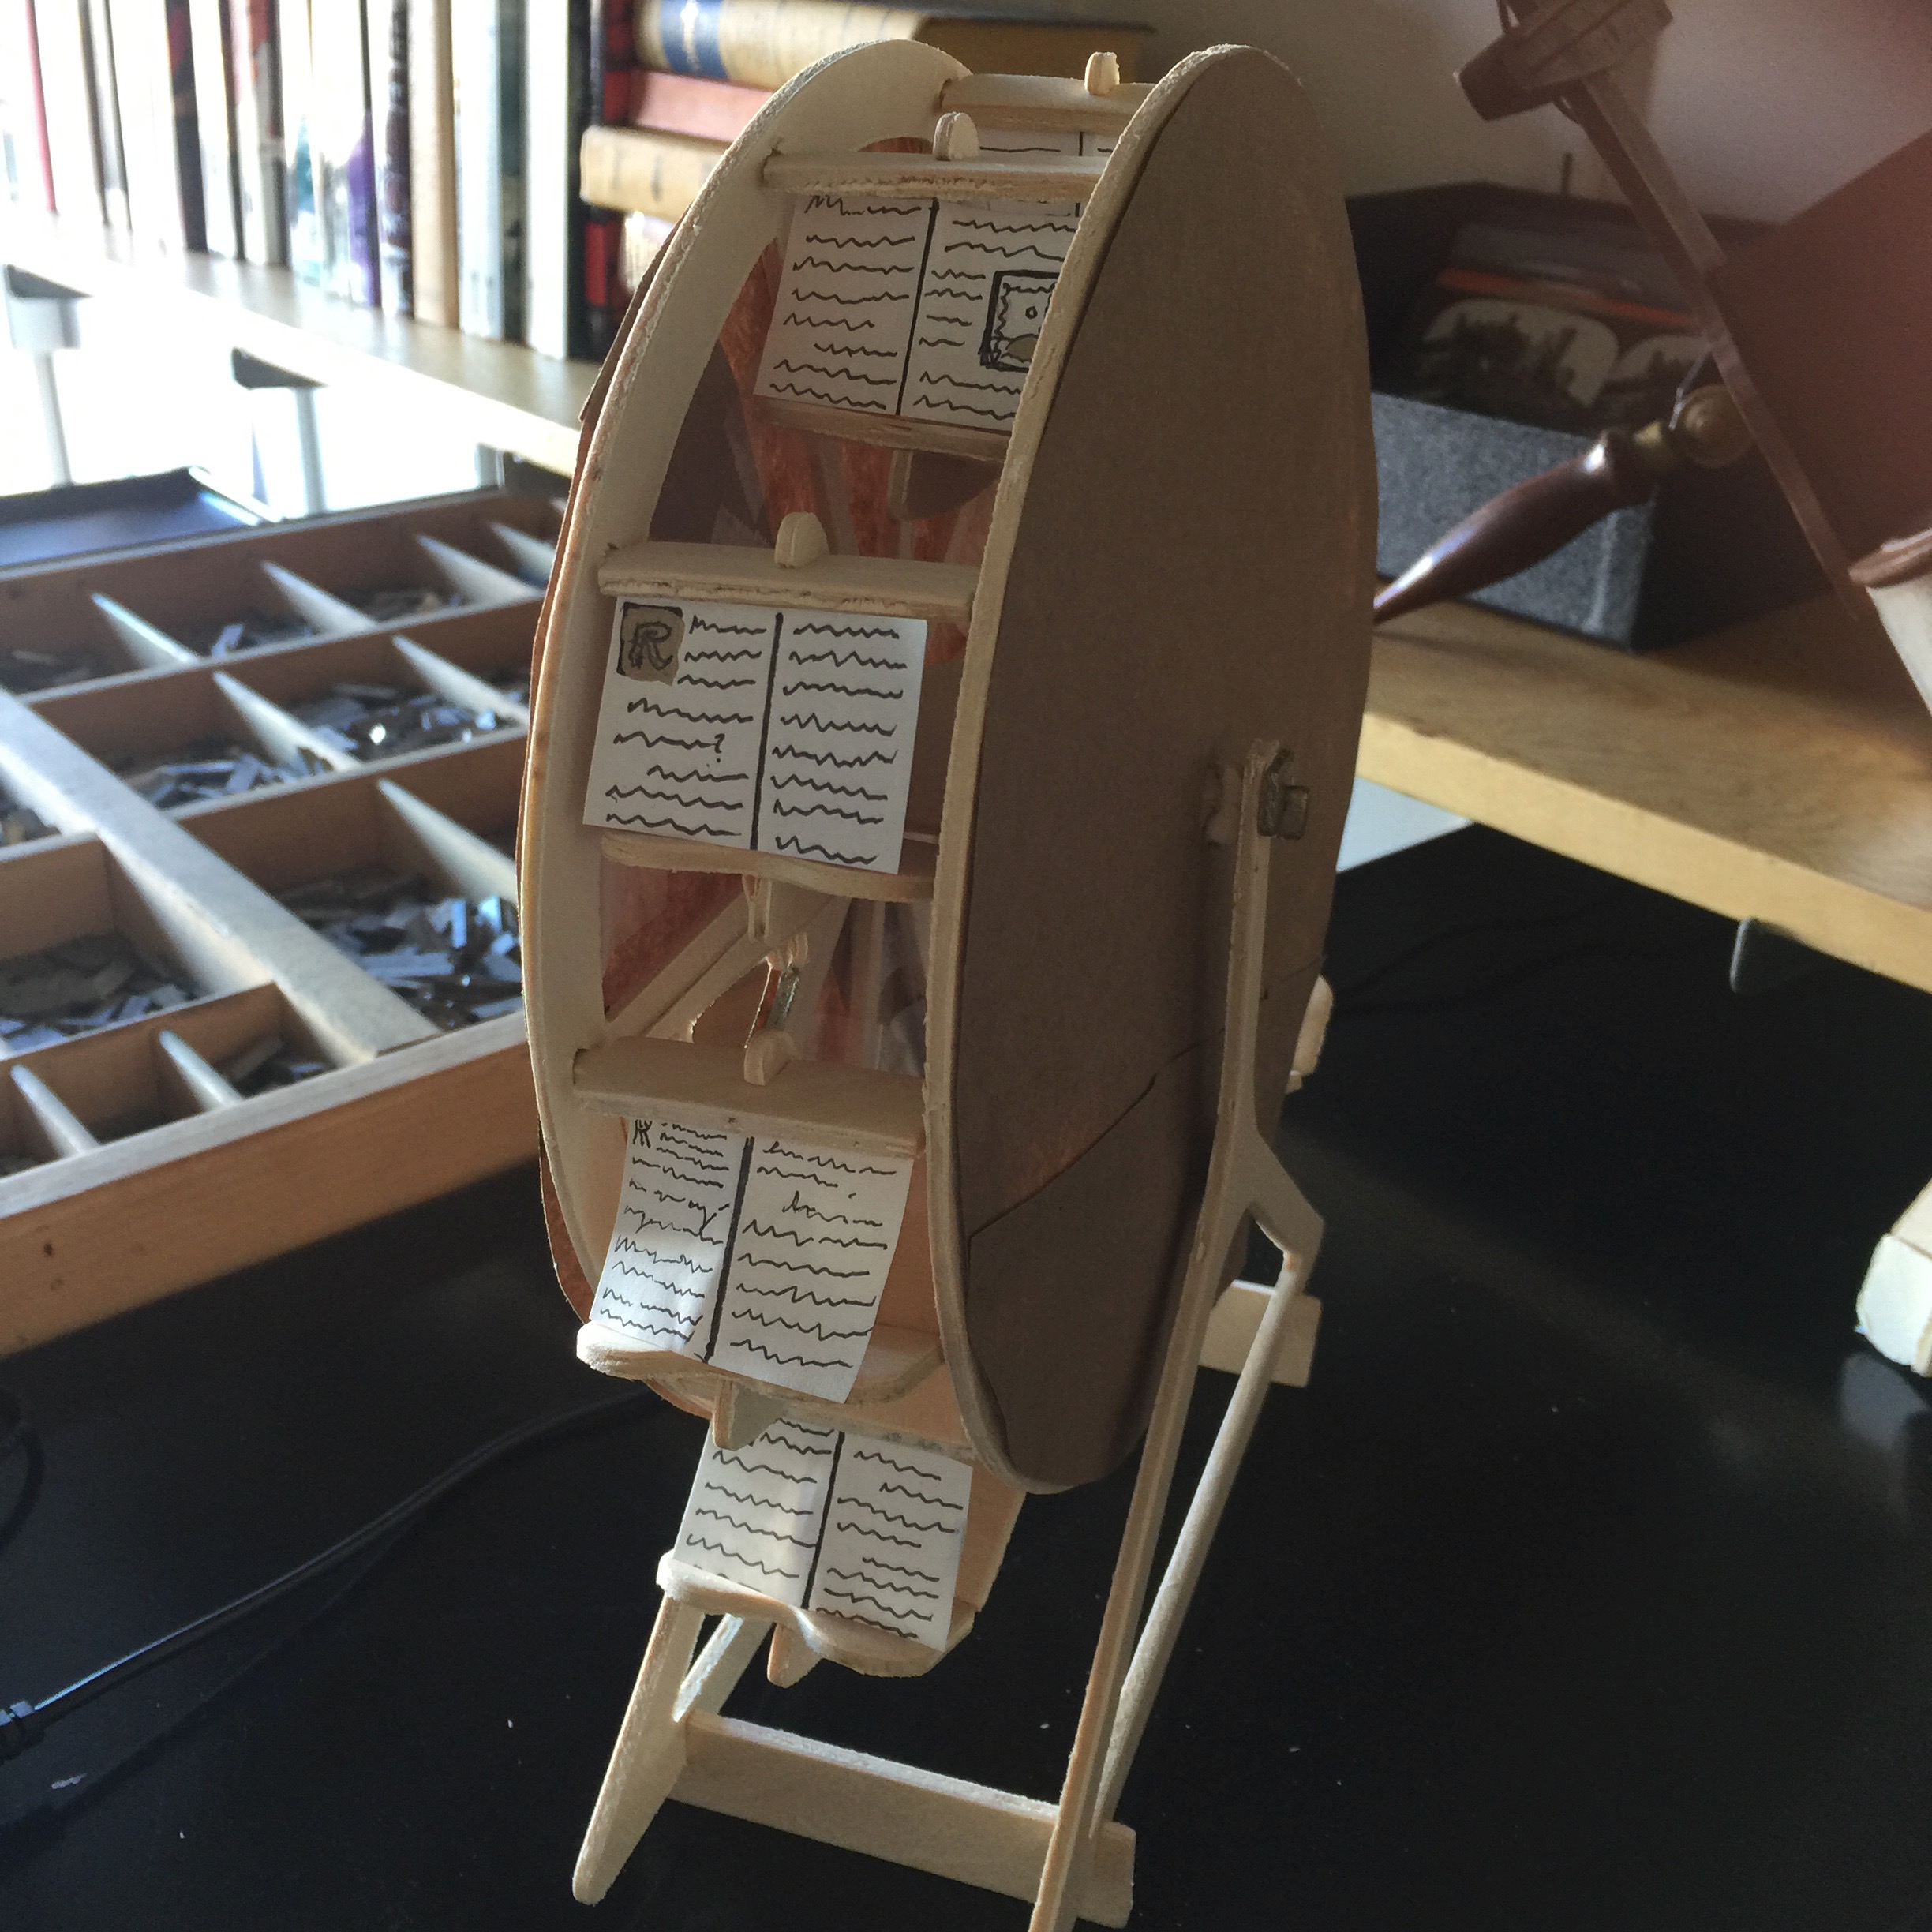 A working model of a Renaissance bookwheel.